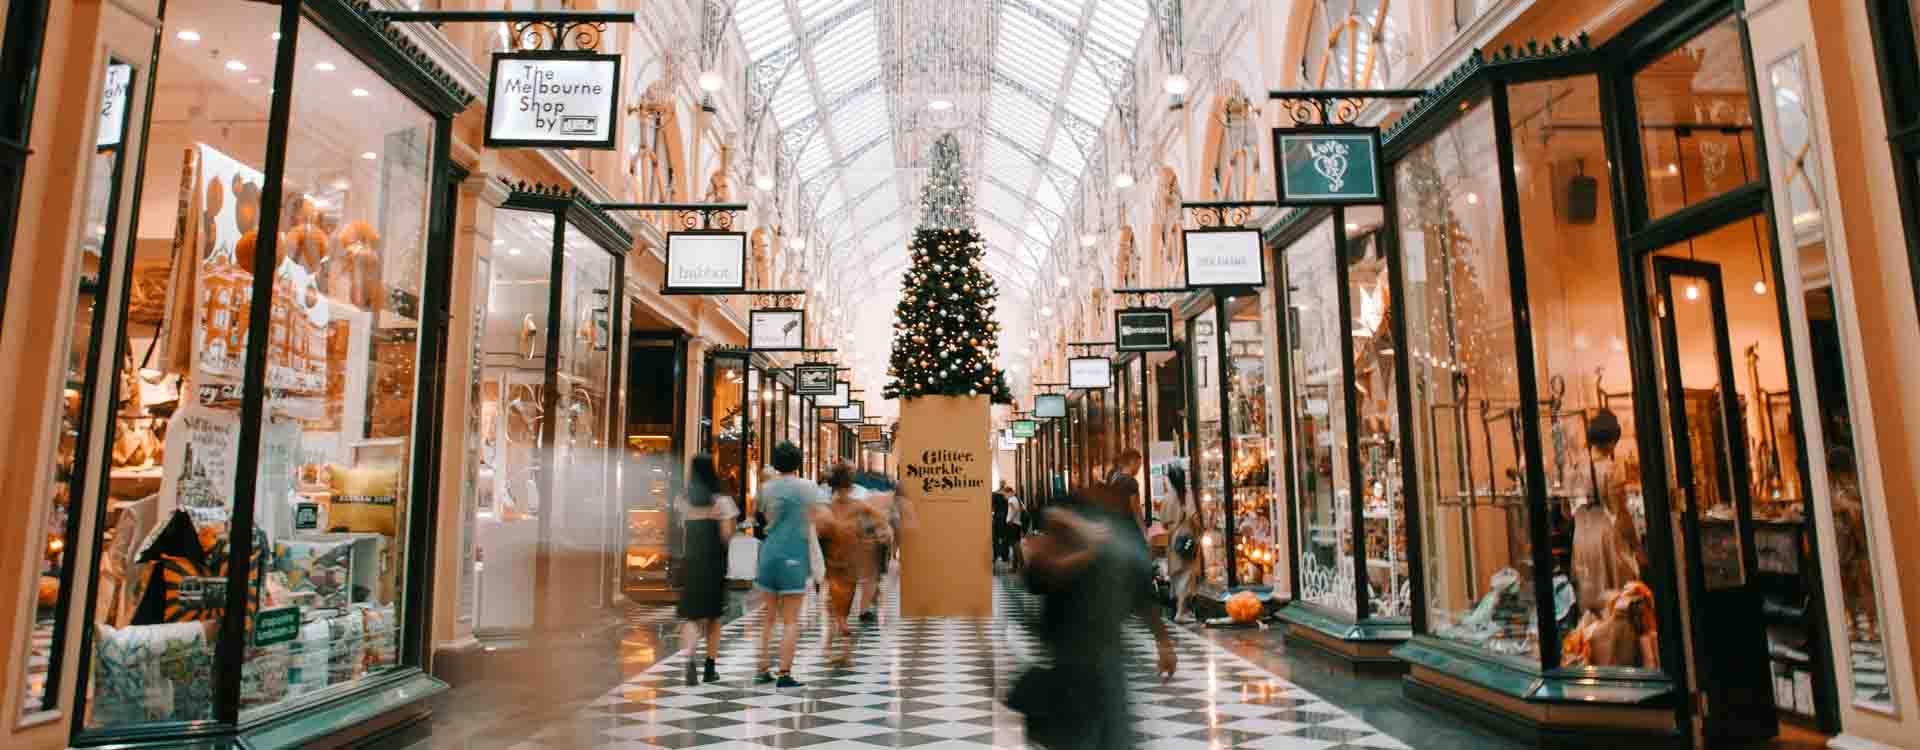 Ilustračný obrázok - vianočné nakupovanie: obchodný dom vyzdobený vianočnou výzdobou